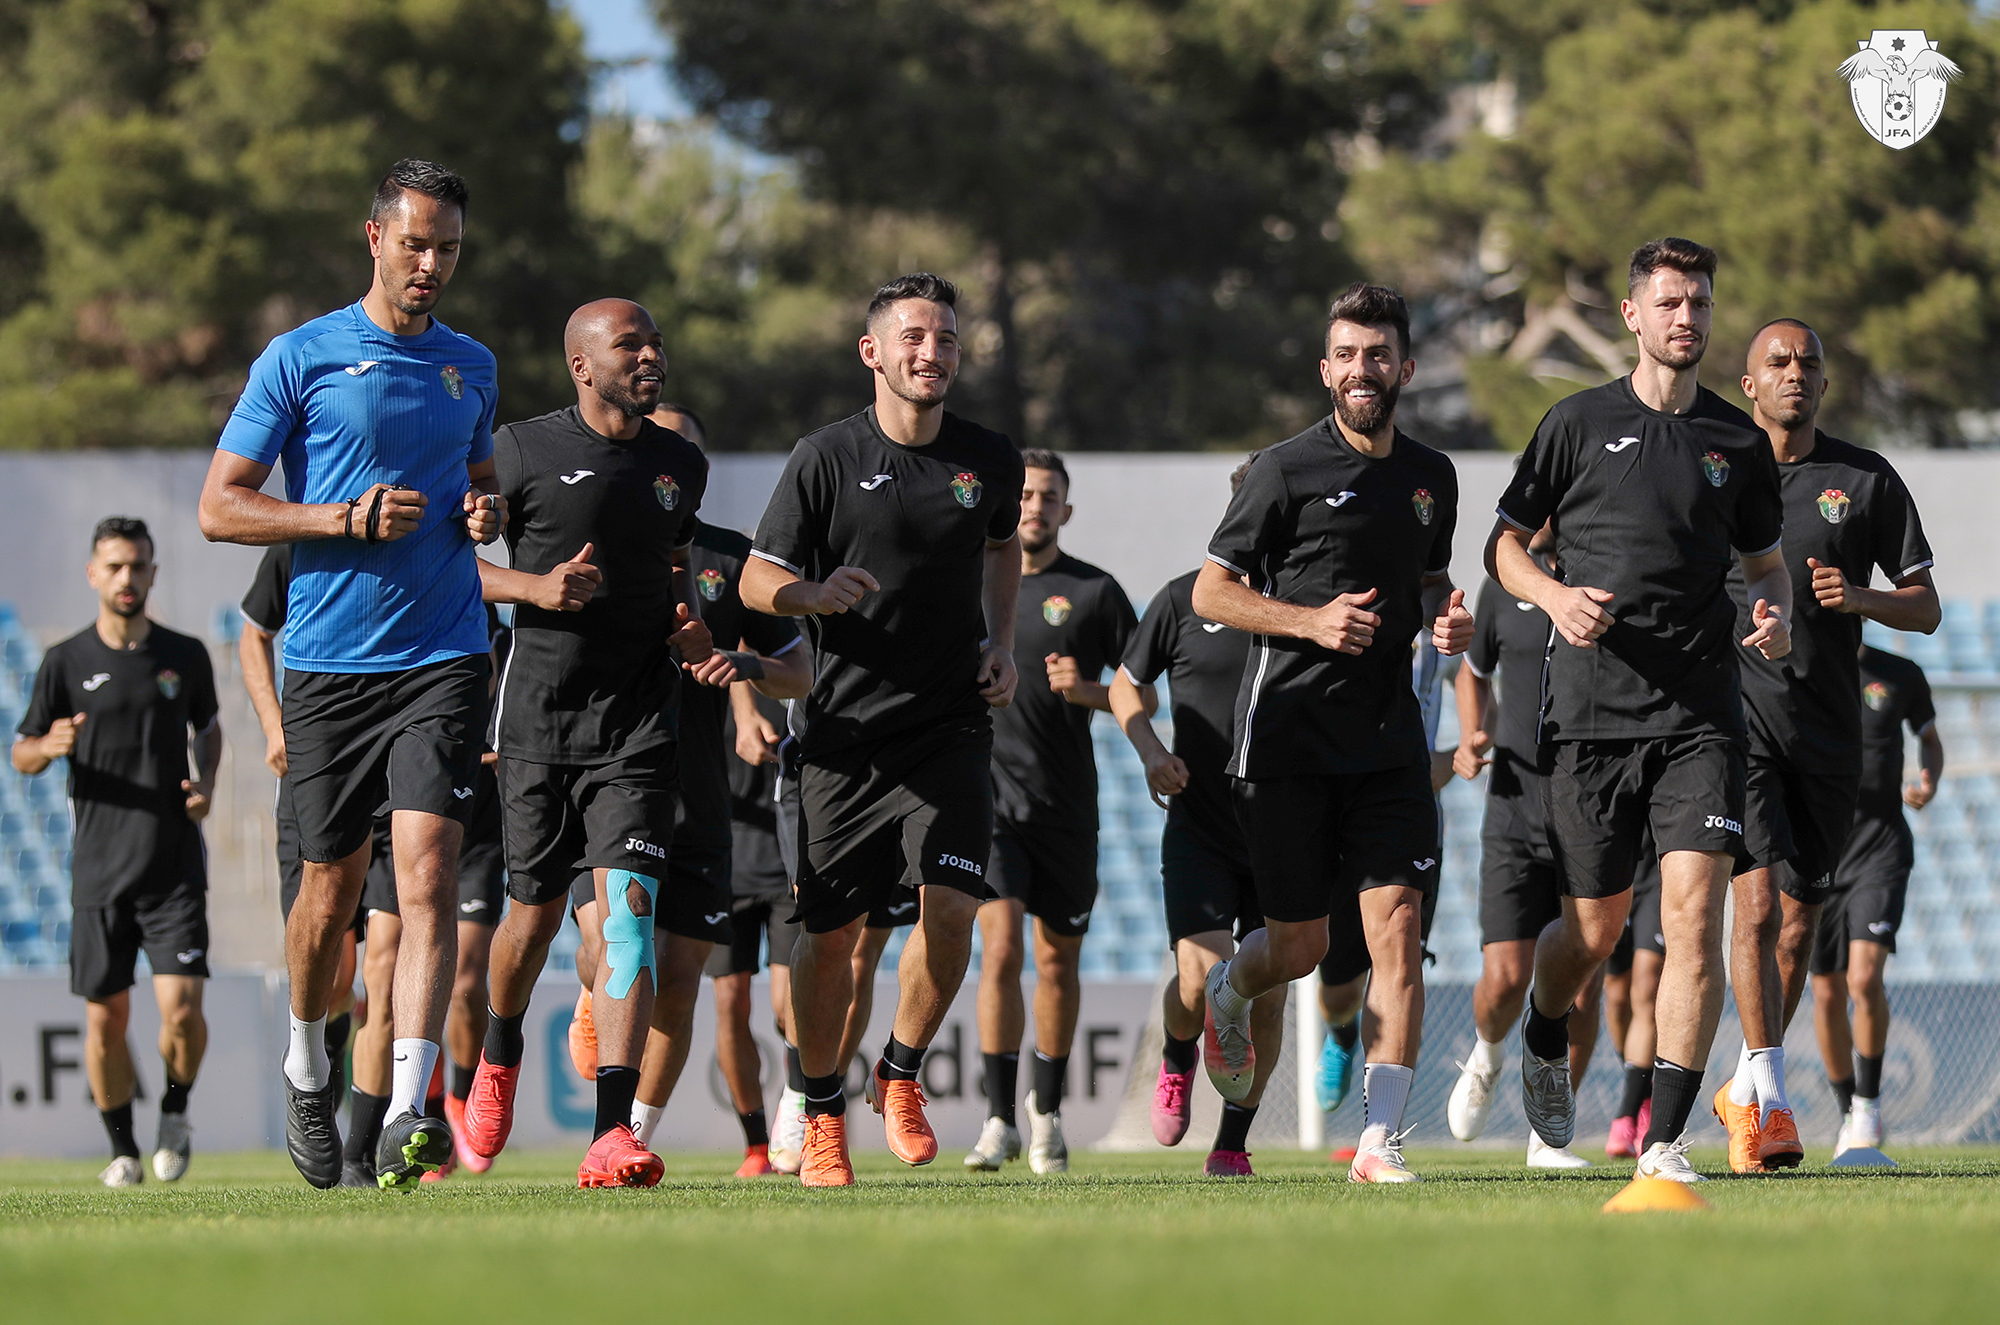 تدريبات المنتخب الوطني لكرة القدم في عمّان استعدادا للدخول في معسكر تدريبي في دبي مساء الأربعاء. (اتحاد كرة القدم)